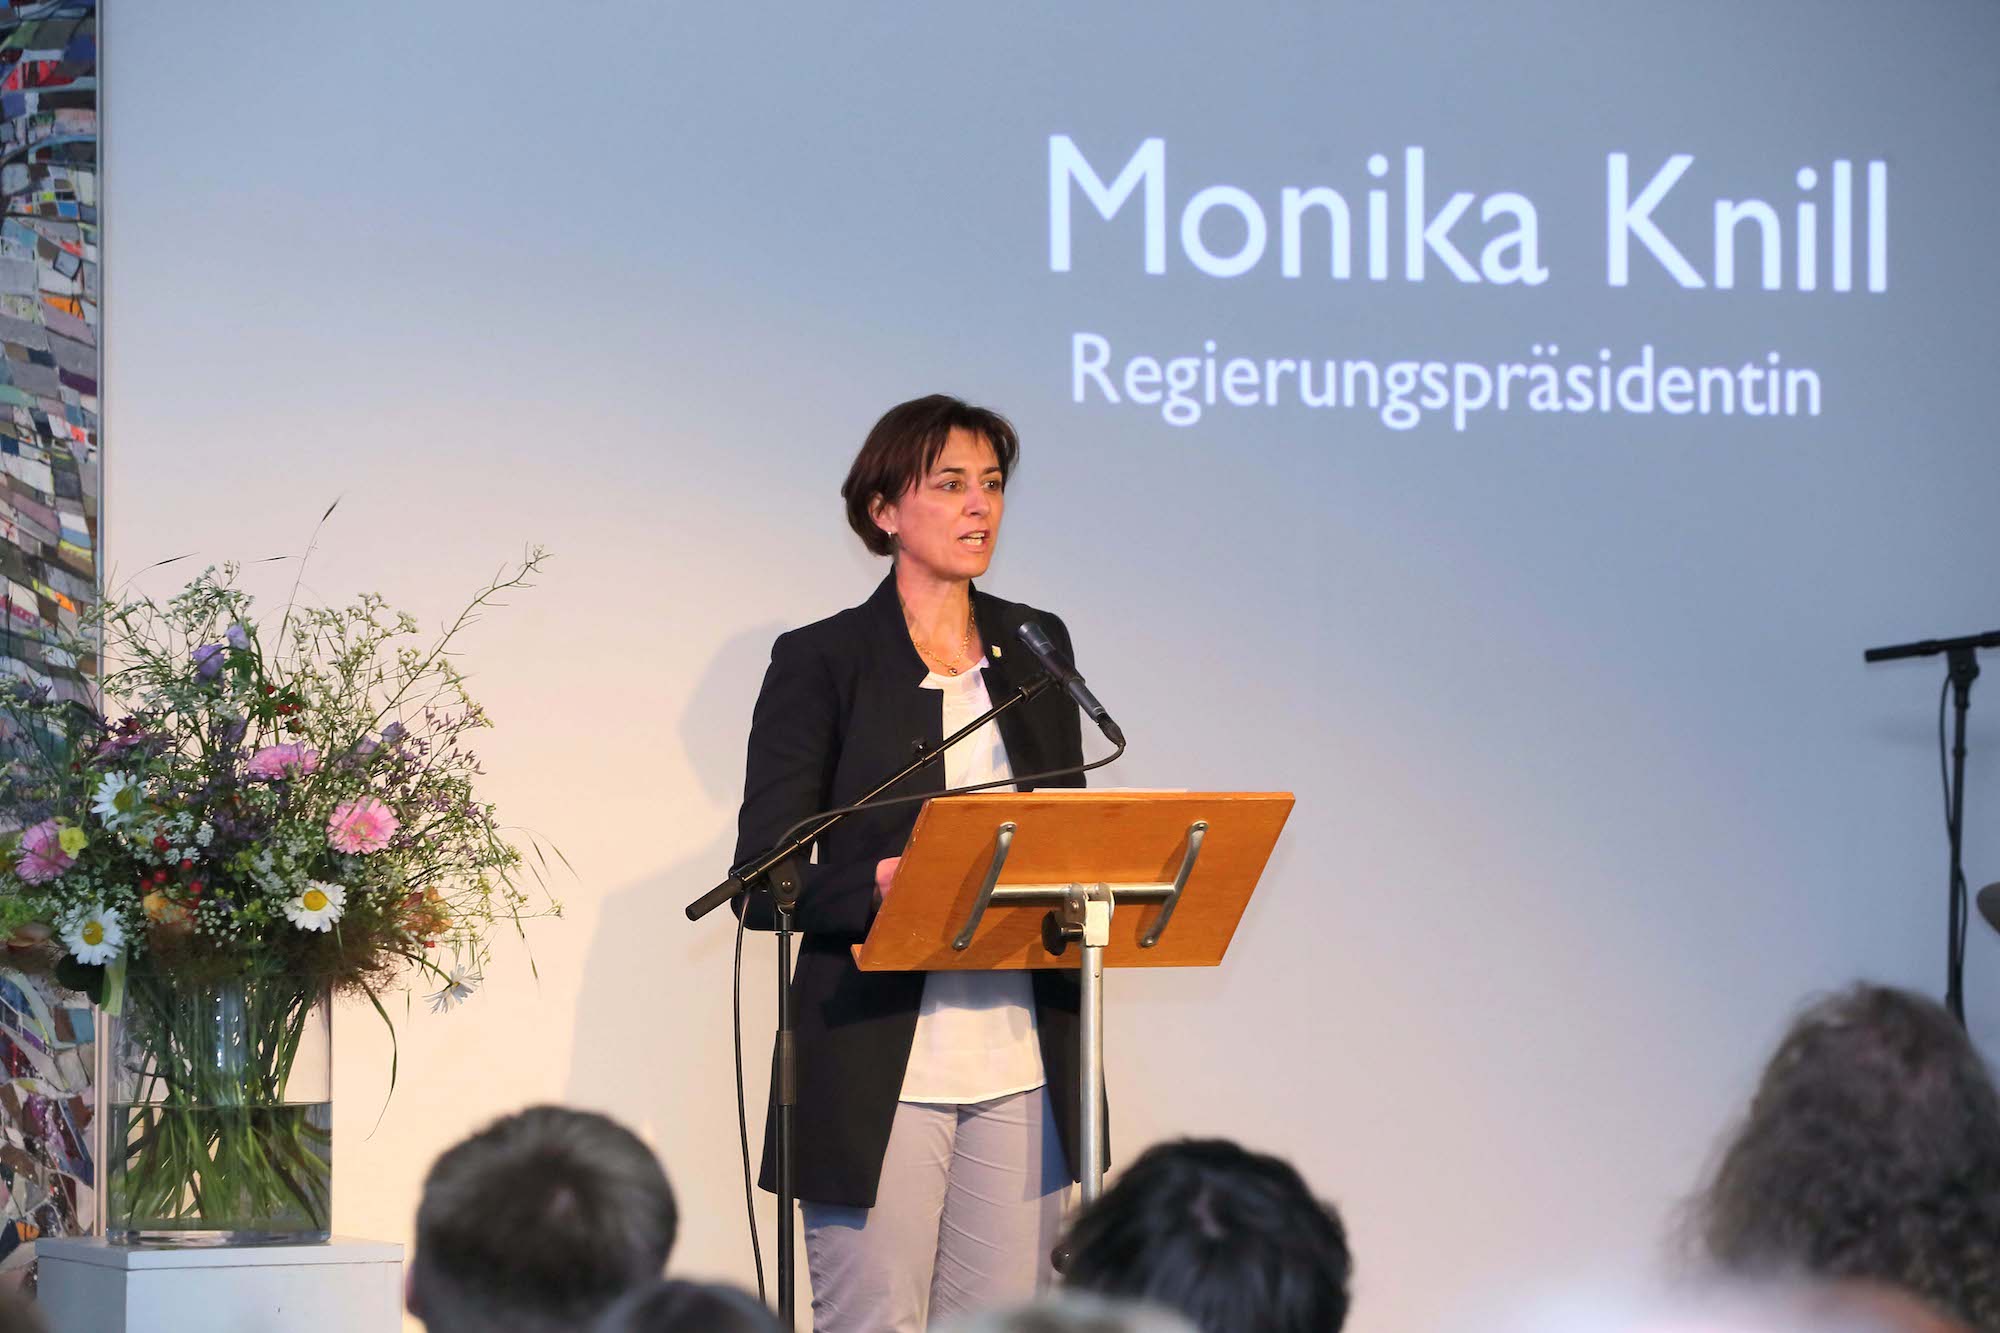 Regierungspräsidentin Monika Knill appellierte an der Übergabe der Förderbeiträge an die Kulturschaffenden, mutig und leidenschaftlich zu sein